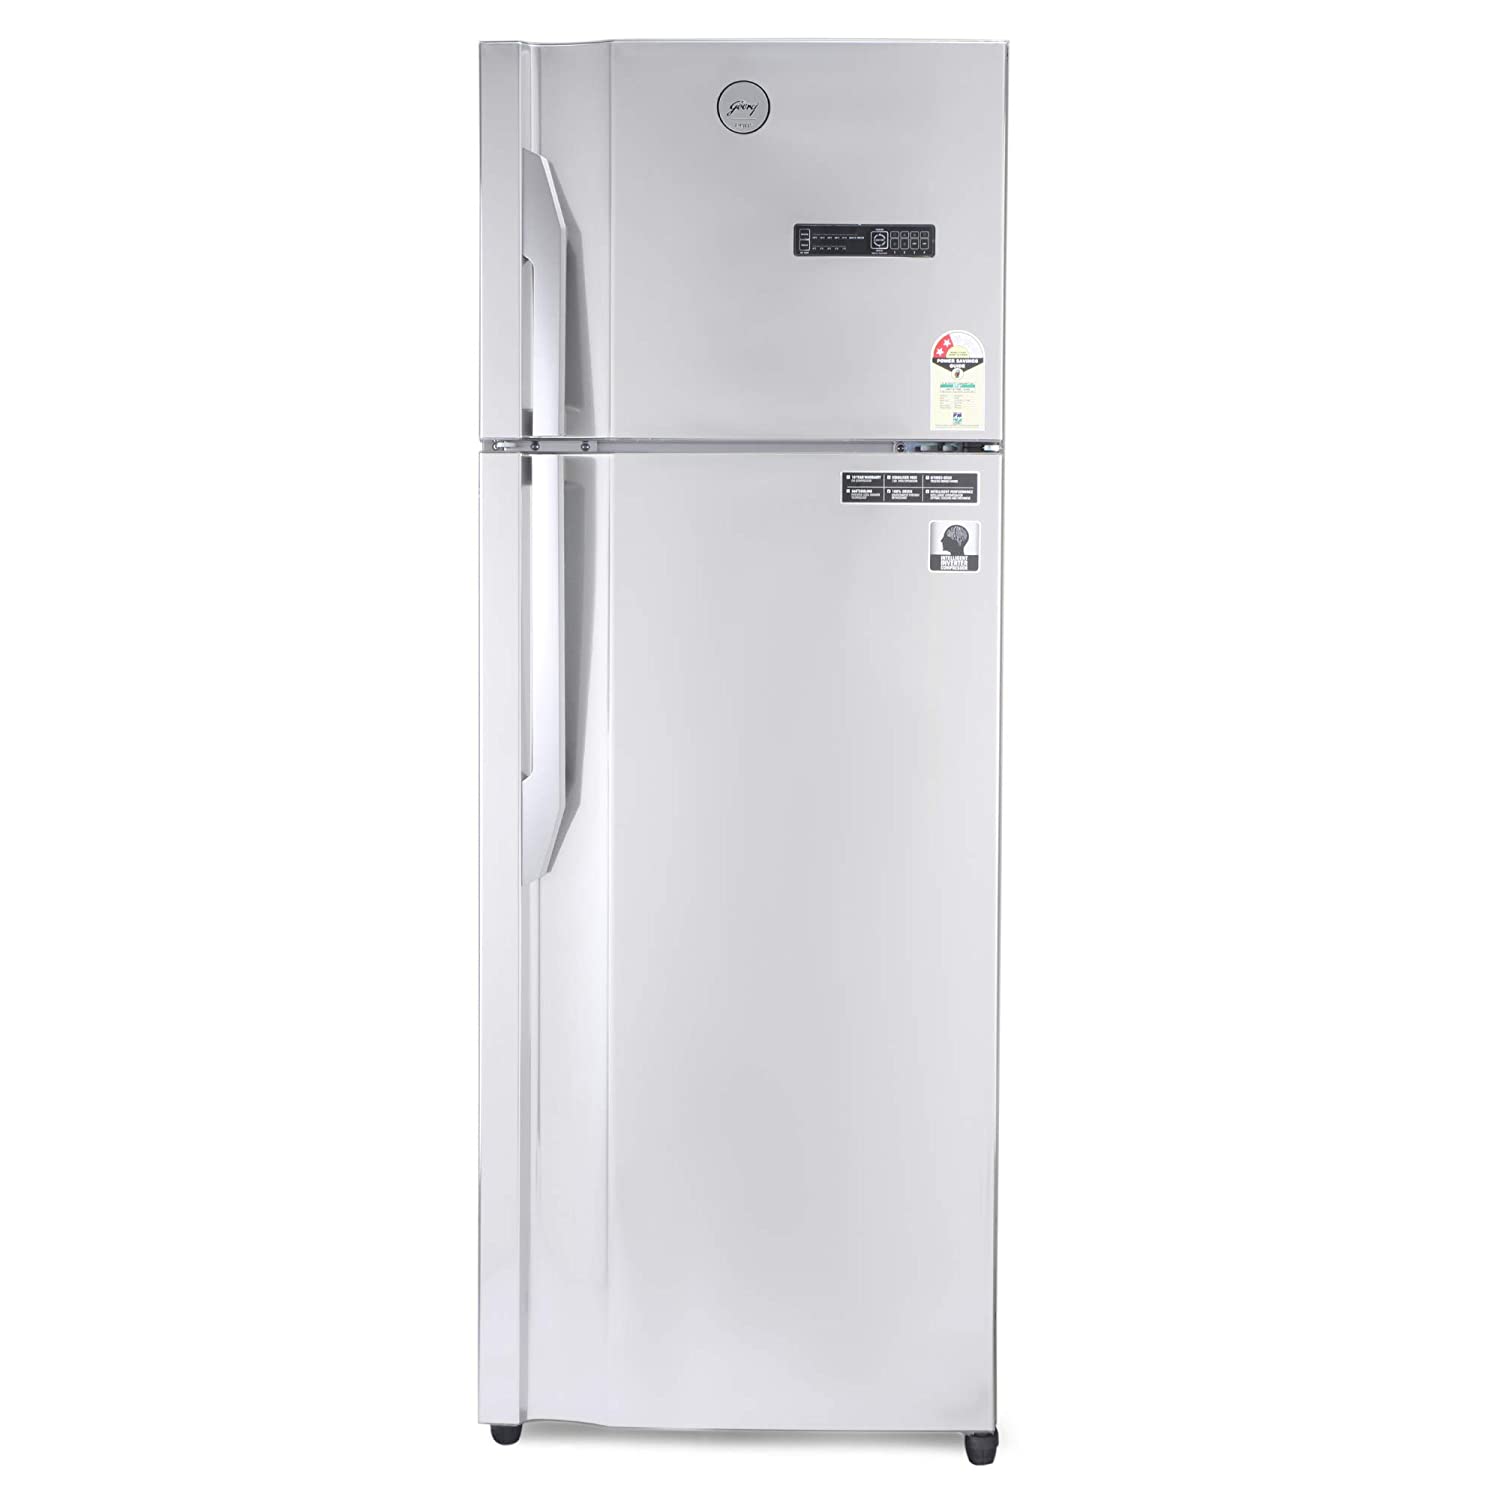 Godrej 350 L Double Door Refrigerator